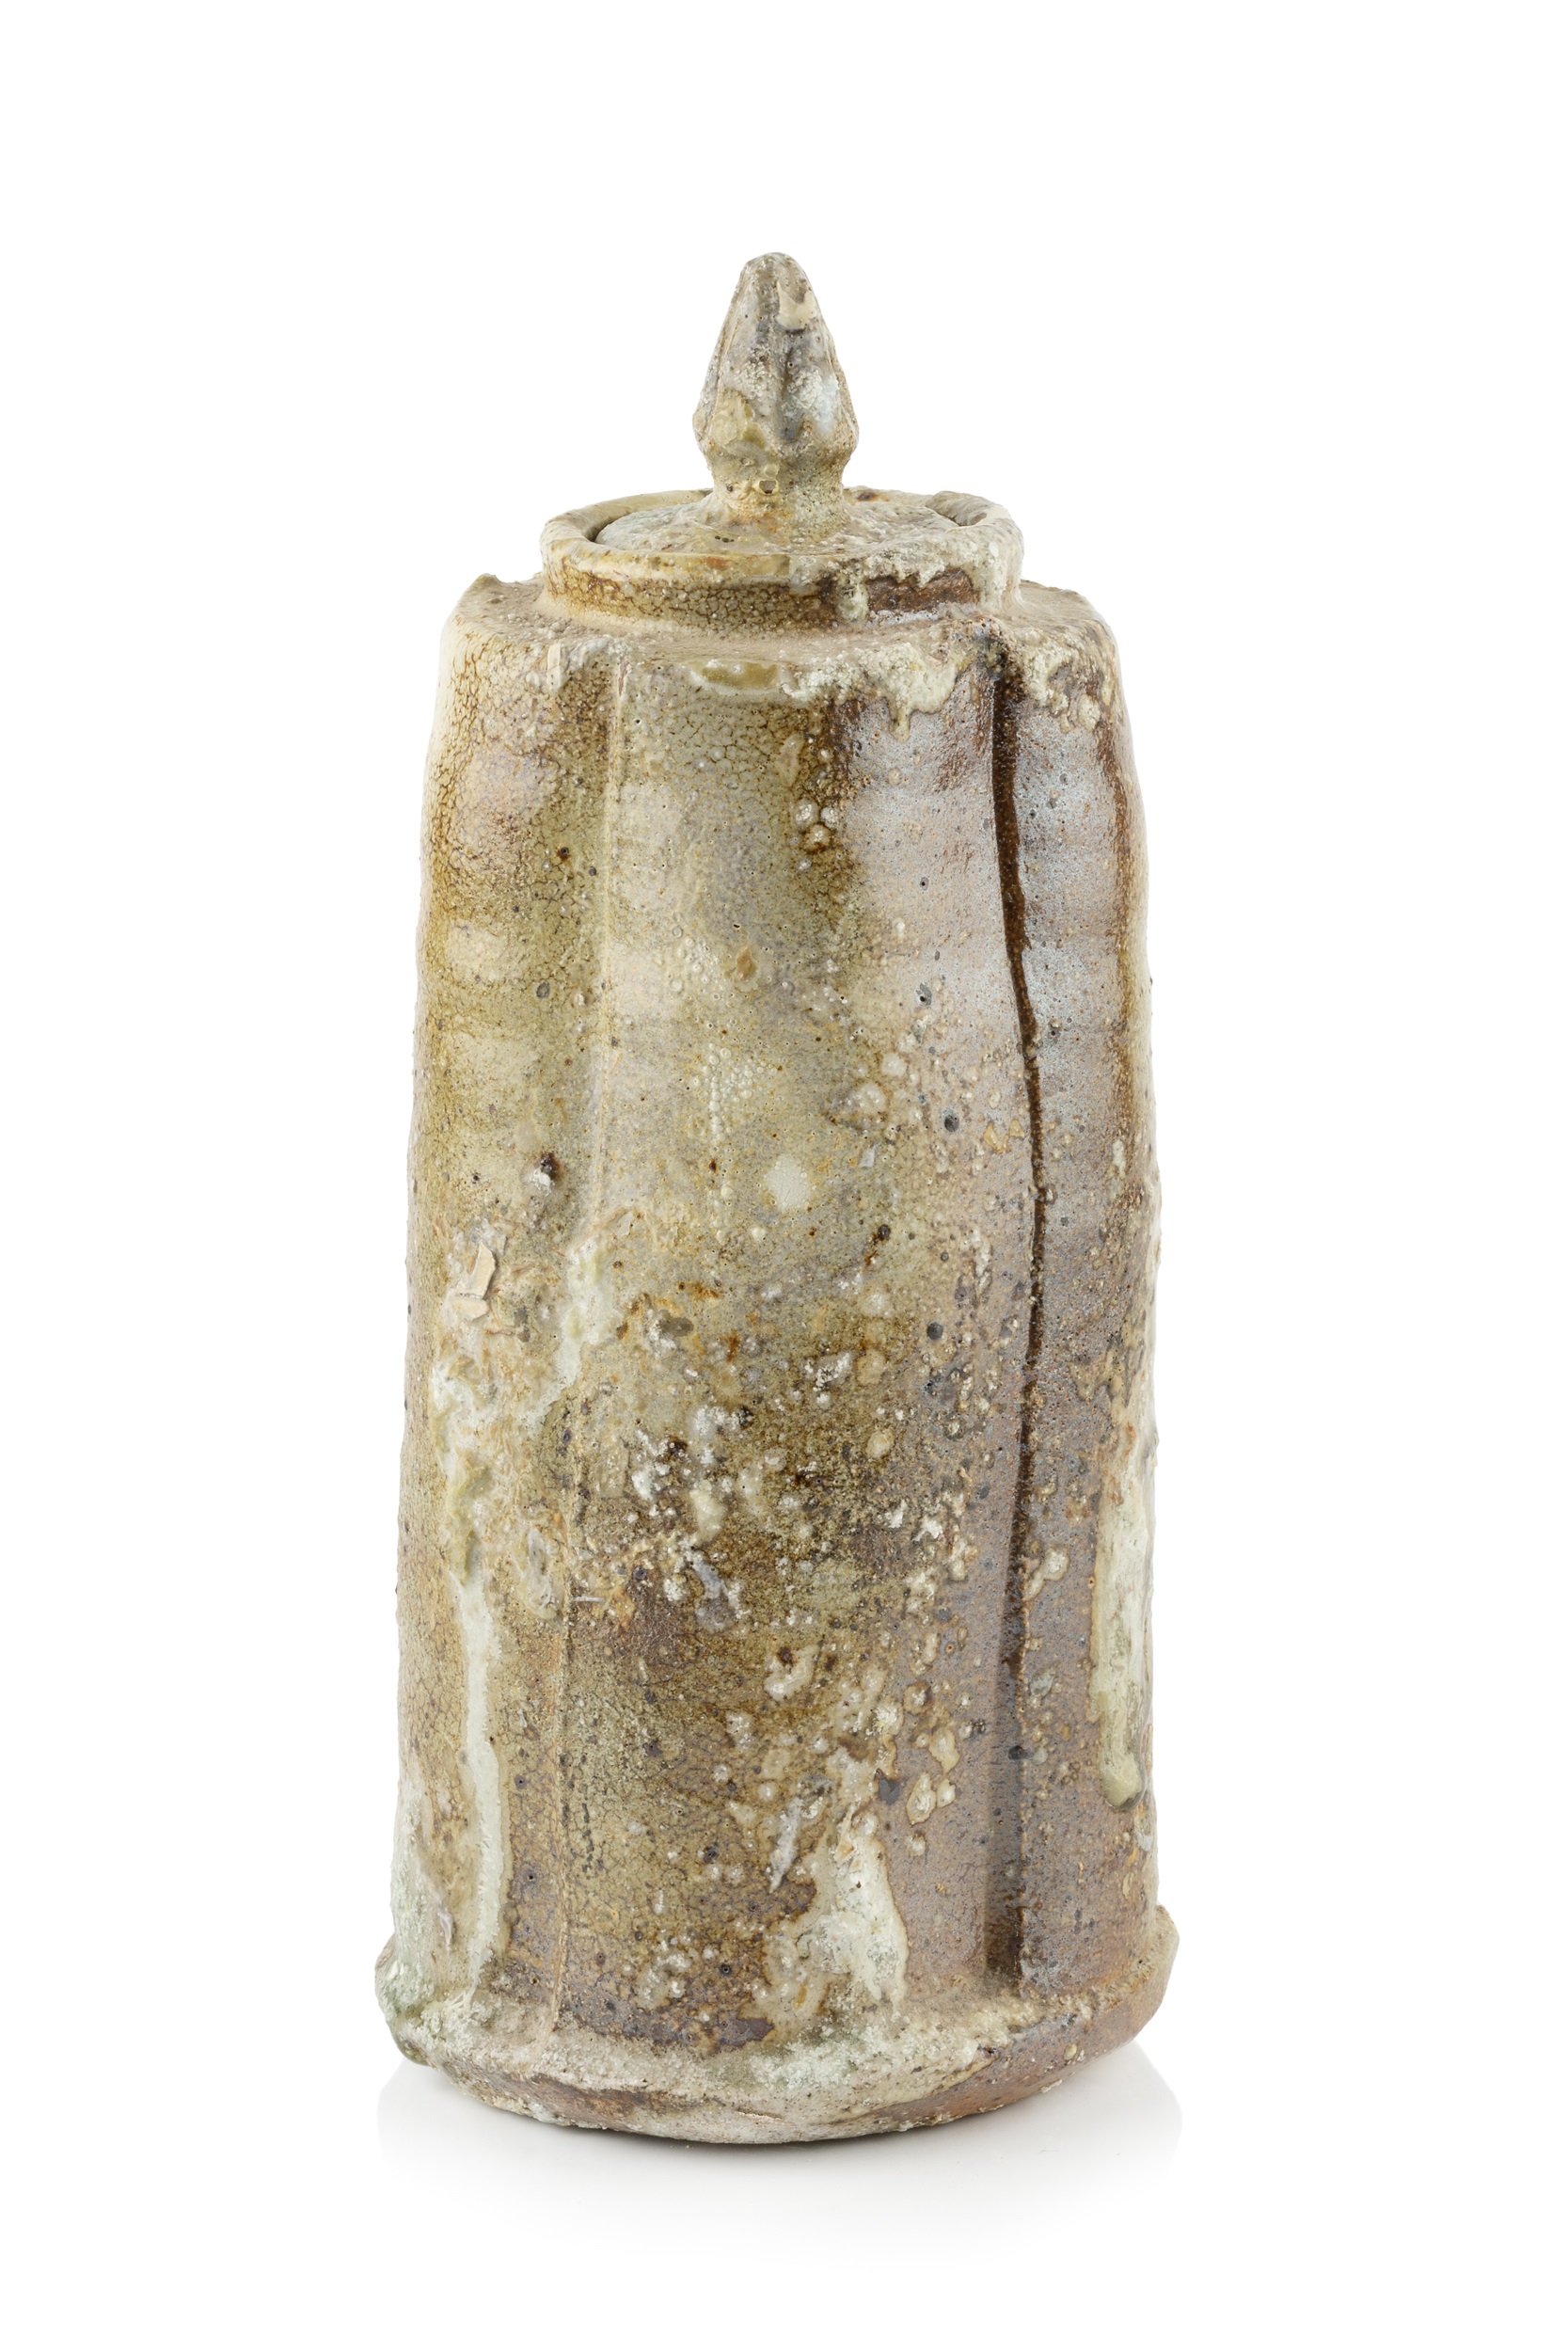 Hans Vangsø (b.1950) Lidded jar wood-fired impressed potter's seal 26cm high. Provenance: The